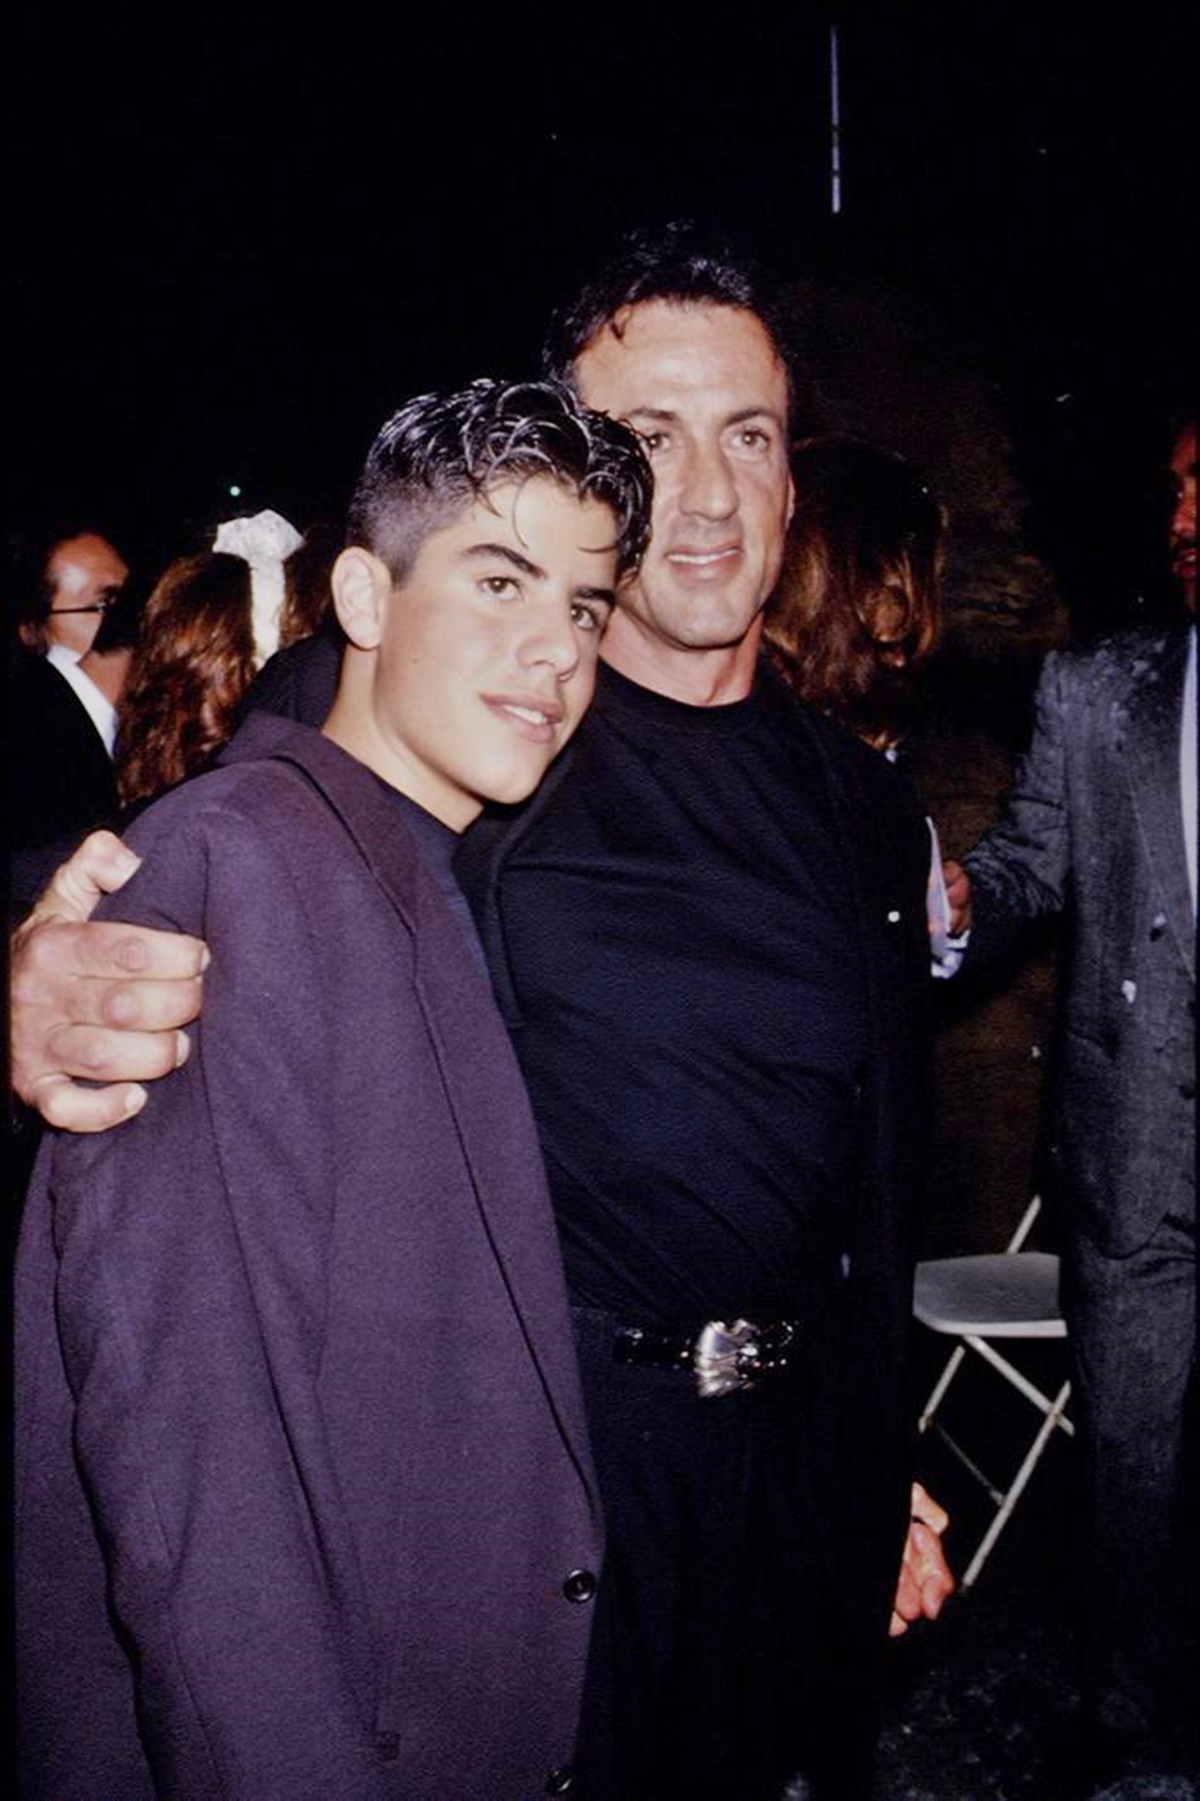 Már 10 éve, hogy elhunyt Sage Stallone – Sylvester Stallone teljesen összetört fia halálától